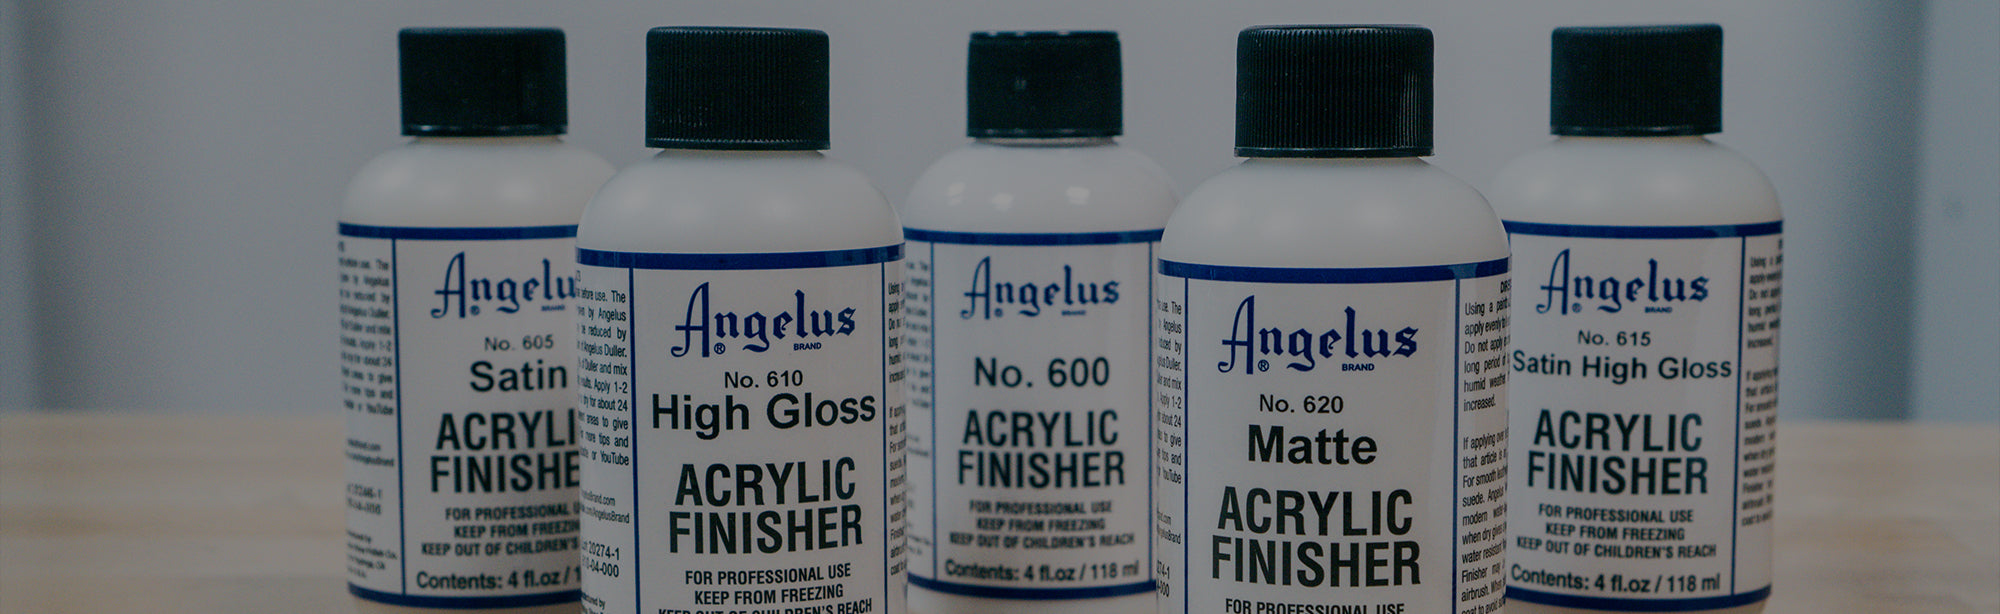 Angelus Acrylic Finisher Satin High Gloss 615 Quart Angelus